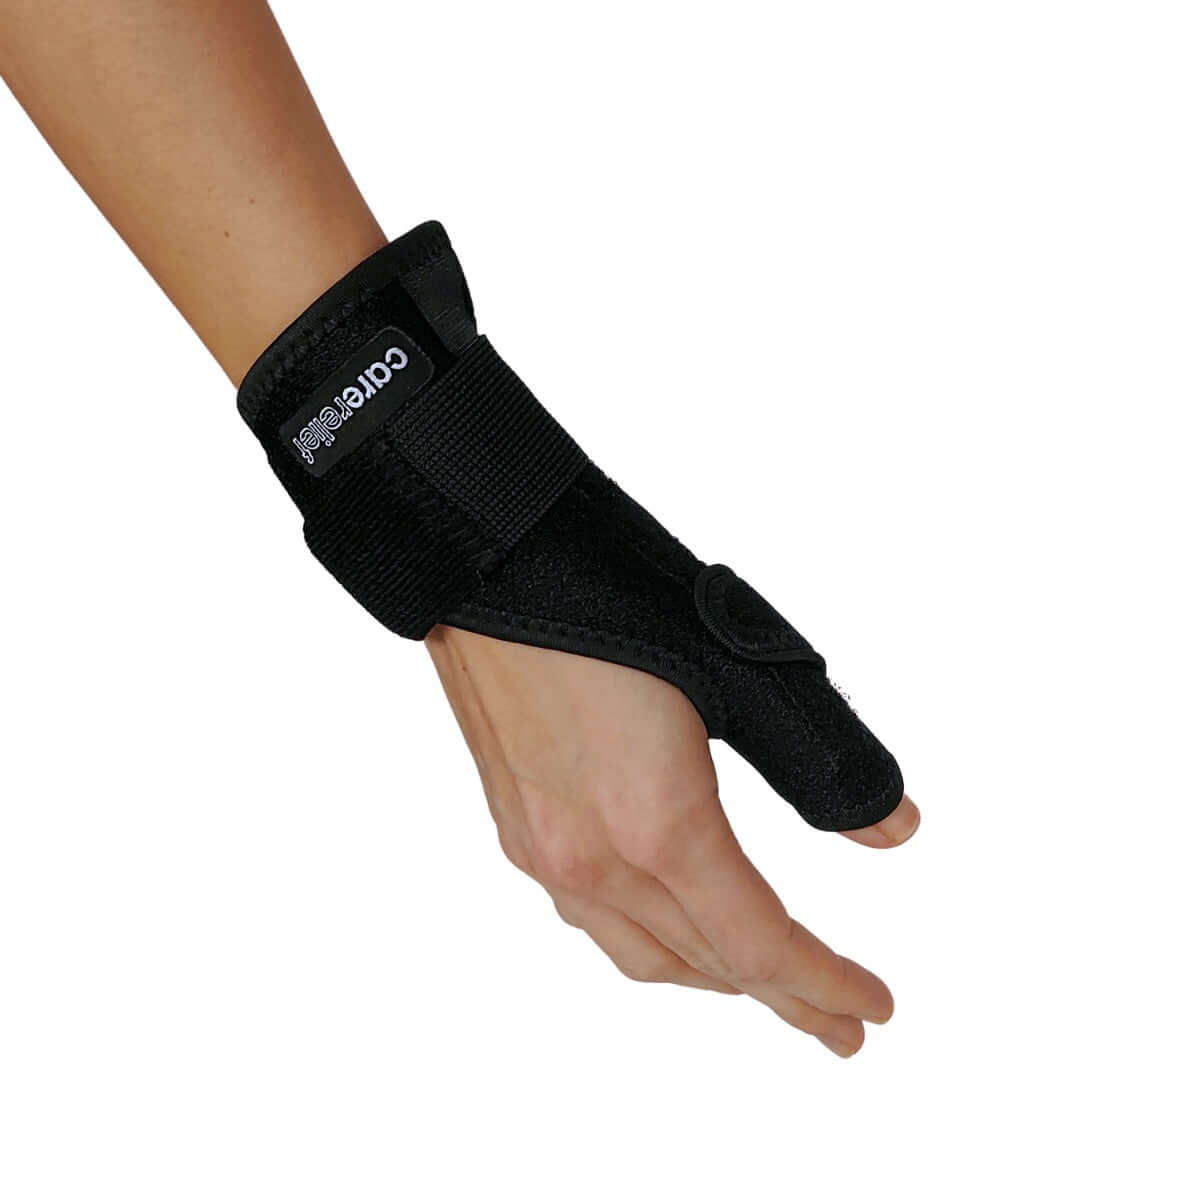 Tommelfingerskinne og håndledsstøtte fjerner smerter og hævelser. Komfortabel håndledsskinne med tommelstøtte stabiliserer tommelfingerens grundled. Lav pris.